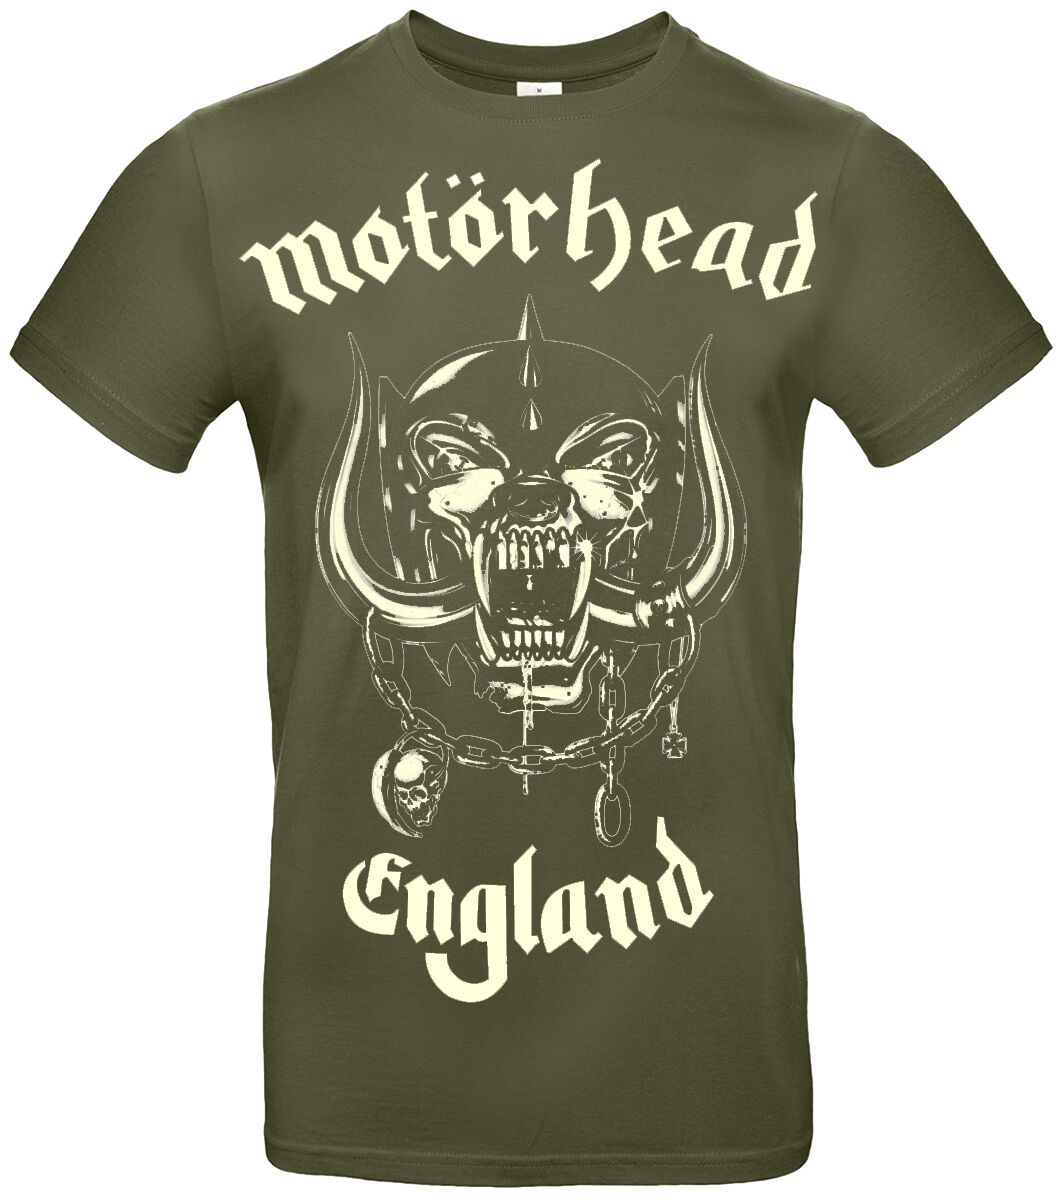 Motörhead T-Shirt - England - S bis XXL - für Männer - Größe L - khaki  - Lizenziertes Merchandise!